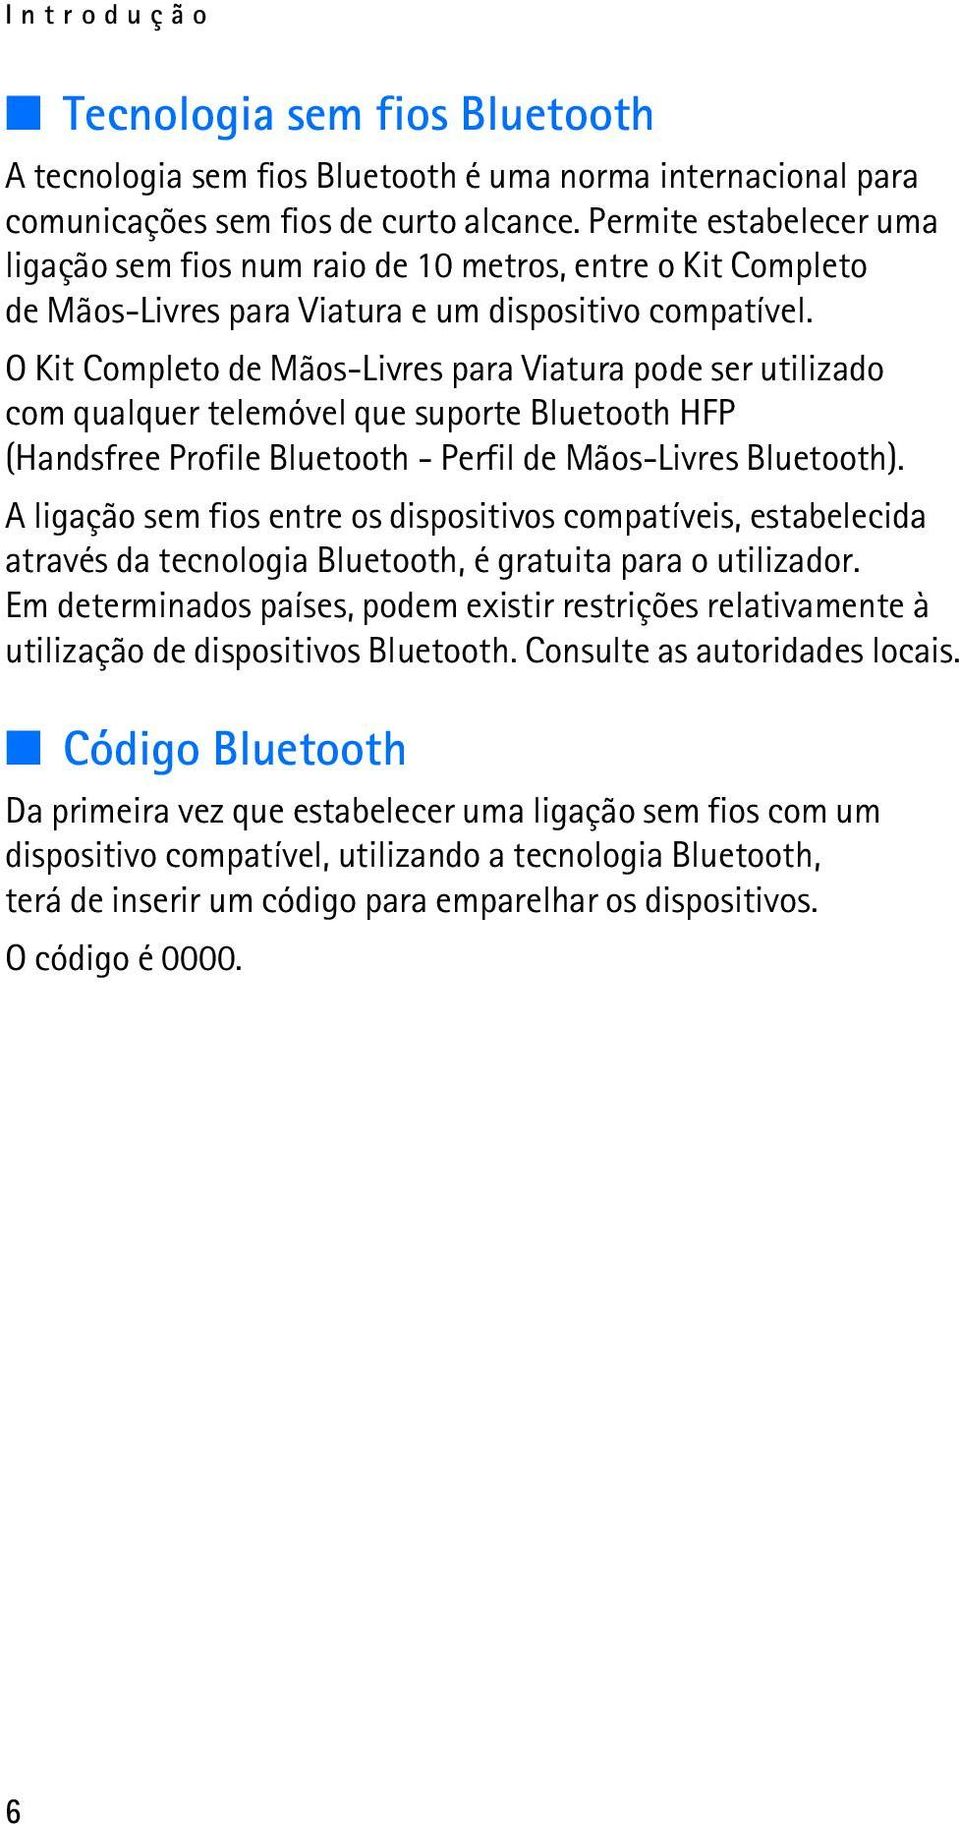 O Kit Completo de Mãos-Livres para Viatura pode ser utilizado com qualquer telemóvel que suporte Bluetooth HFP (Handsfree Profile Bluetooth - Perfil de Mãos-Livres Bluetooth).